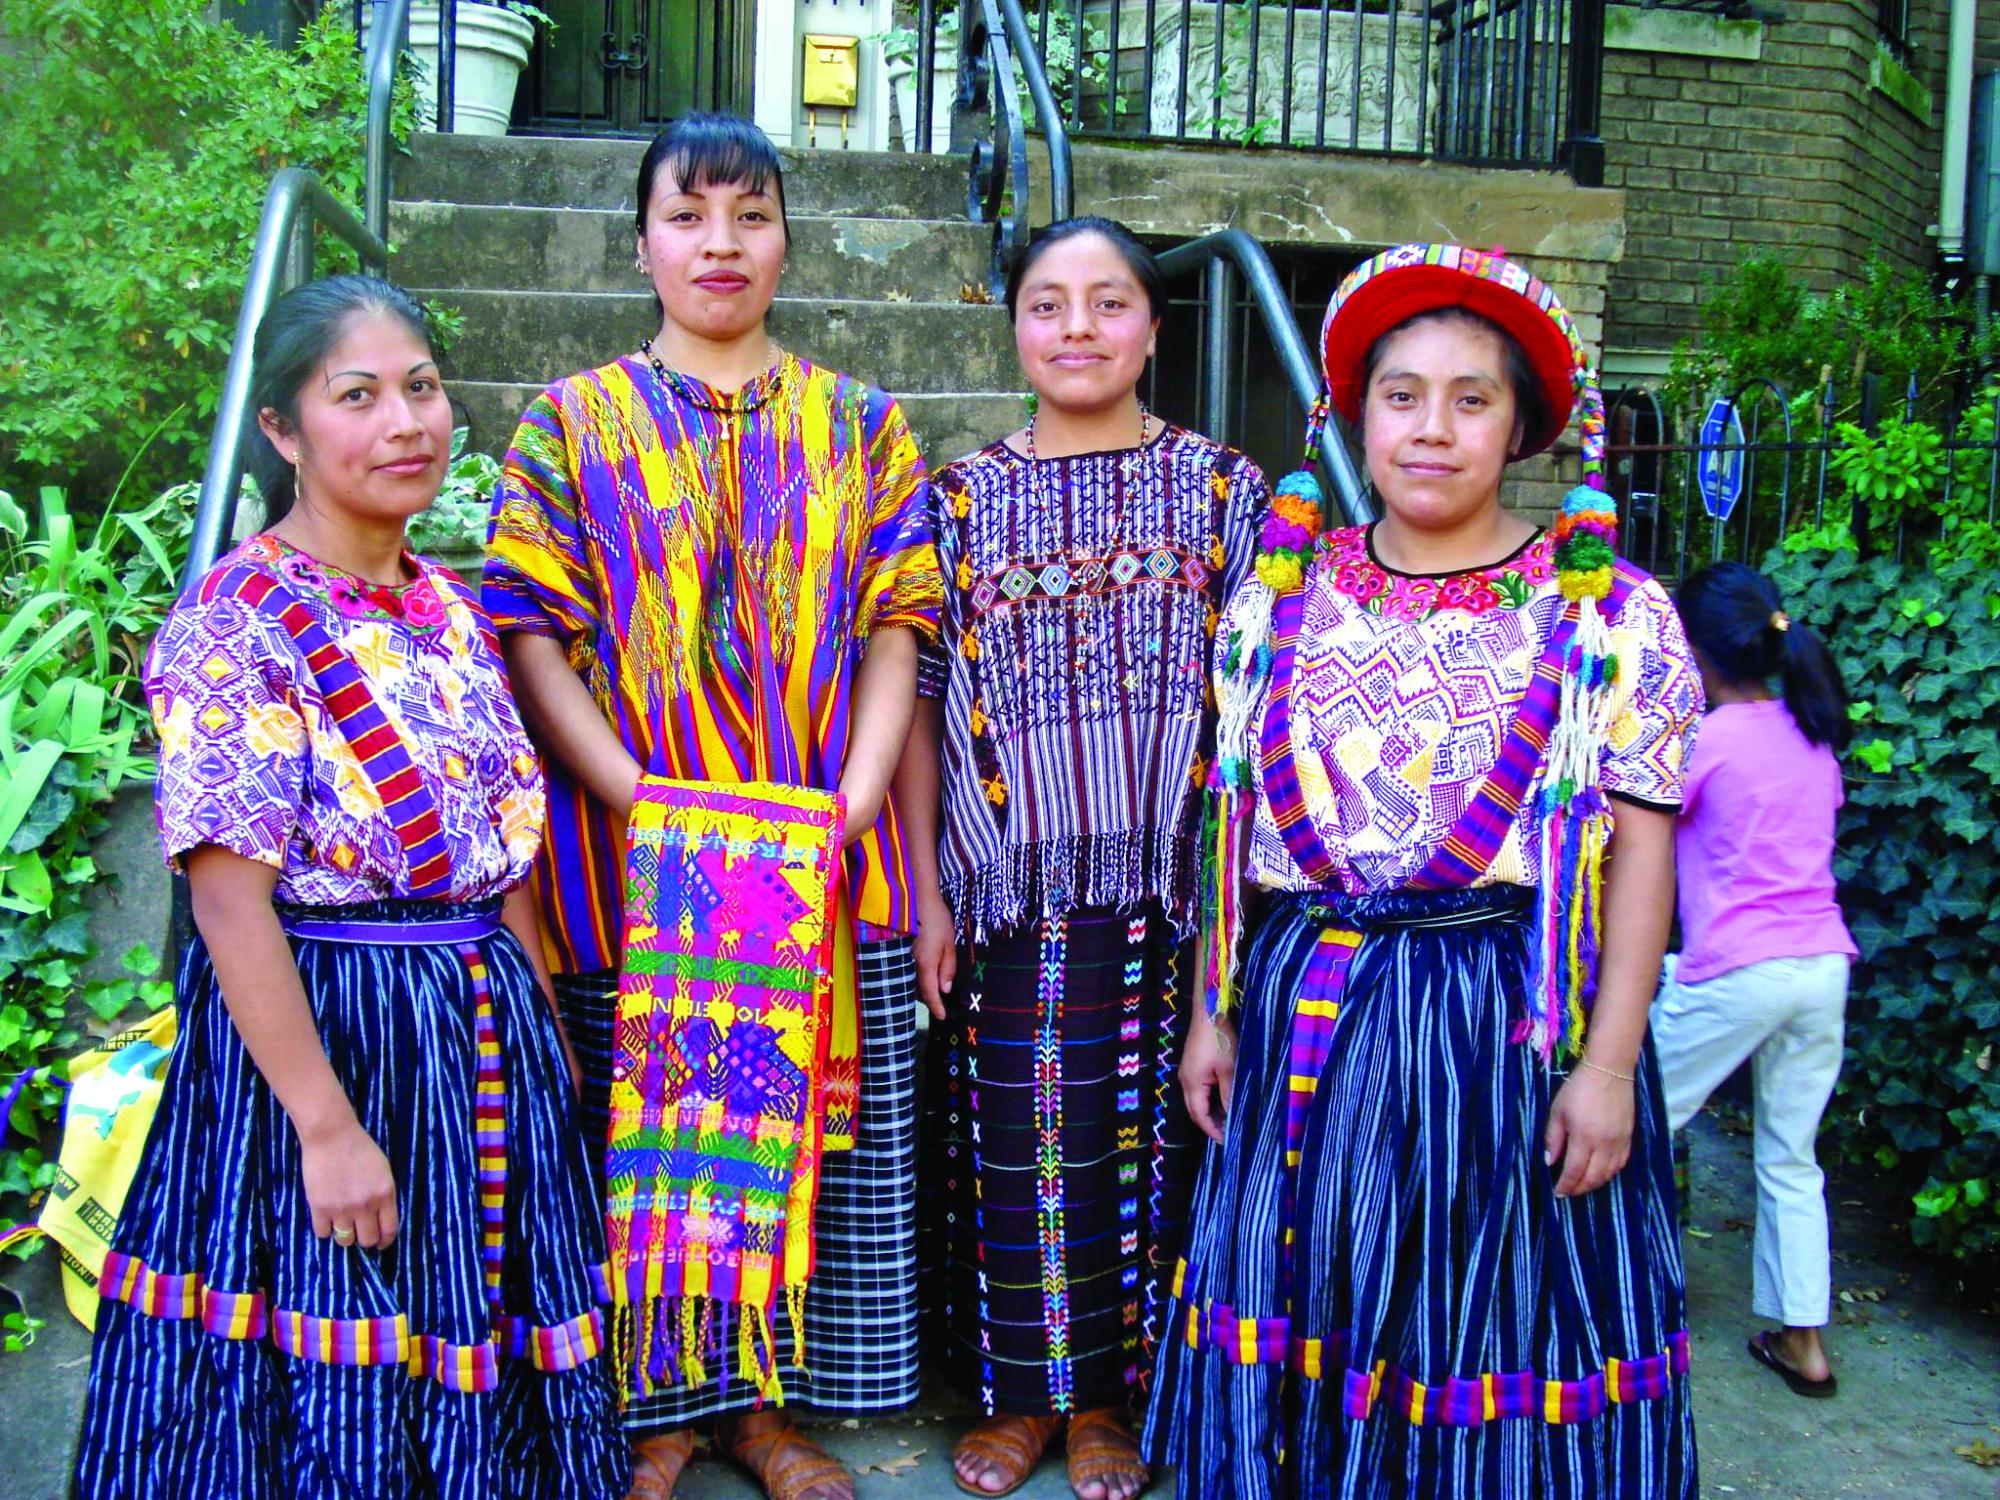 González explicó que puede hacer los cortes de los trajes típicos guatemaltecos y los venden.